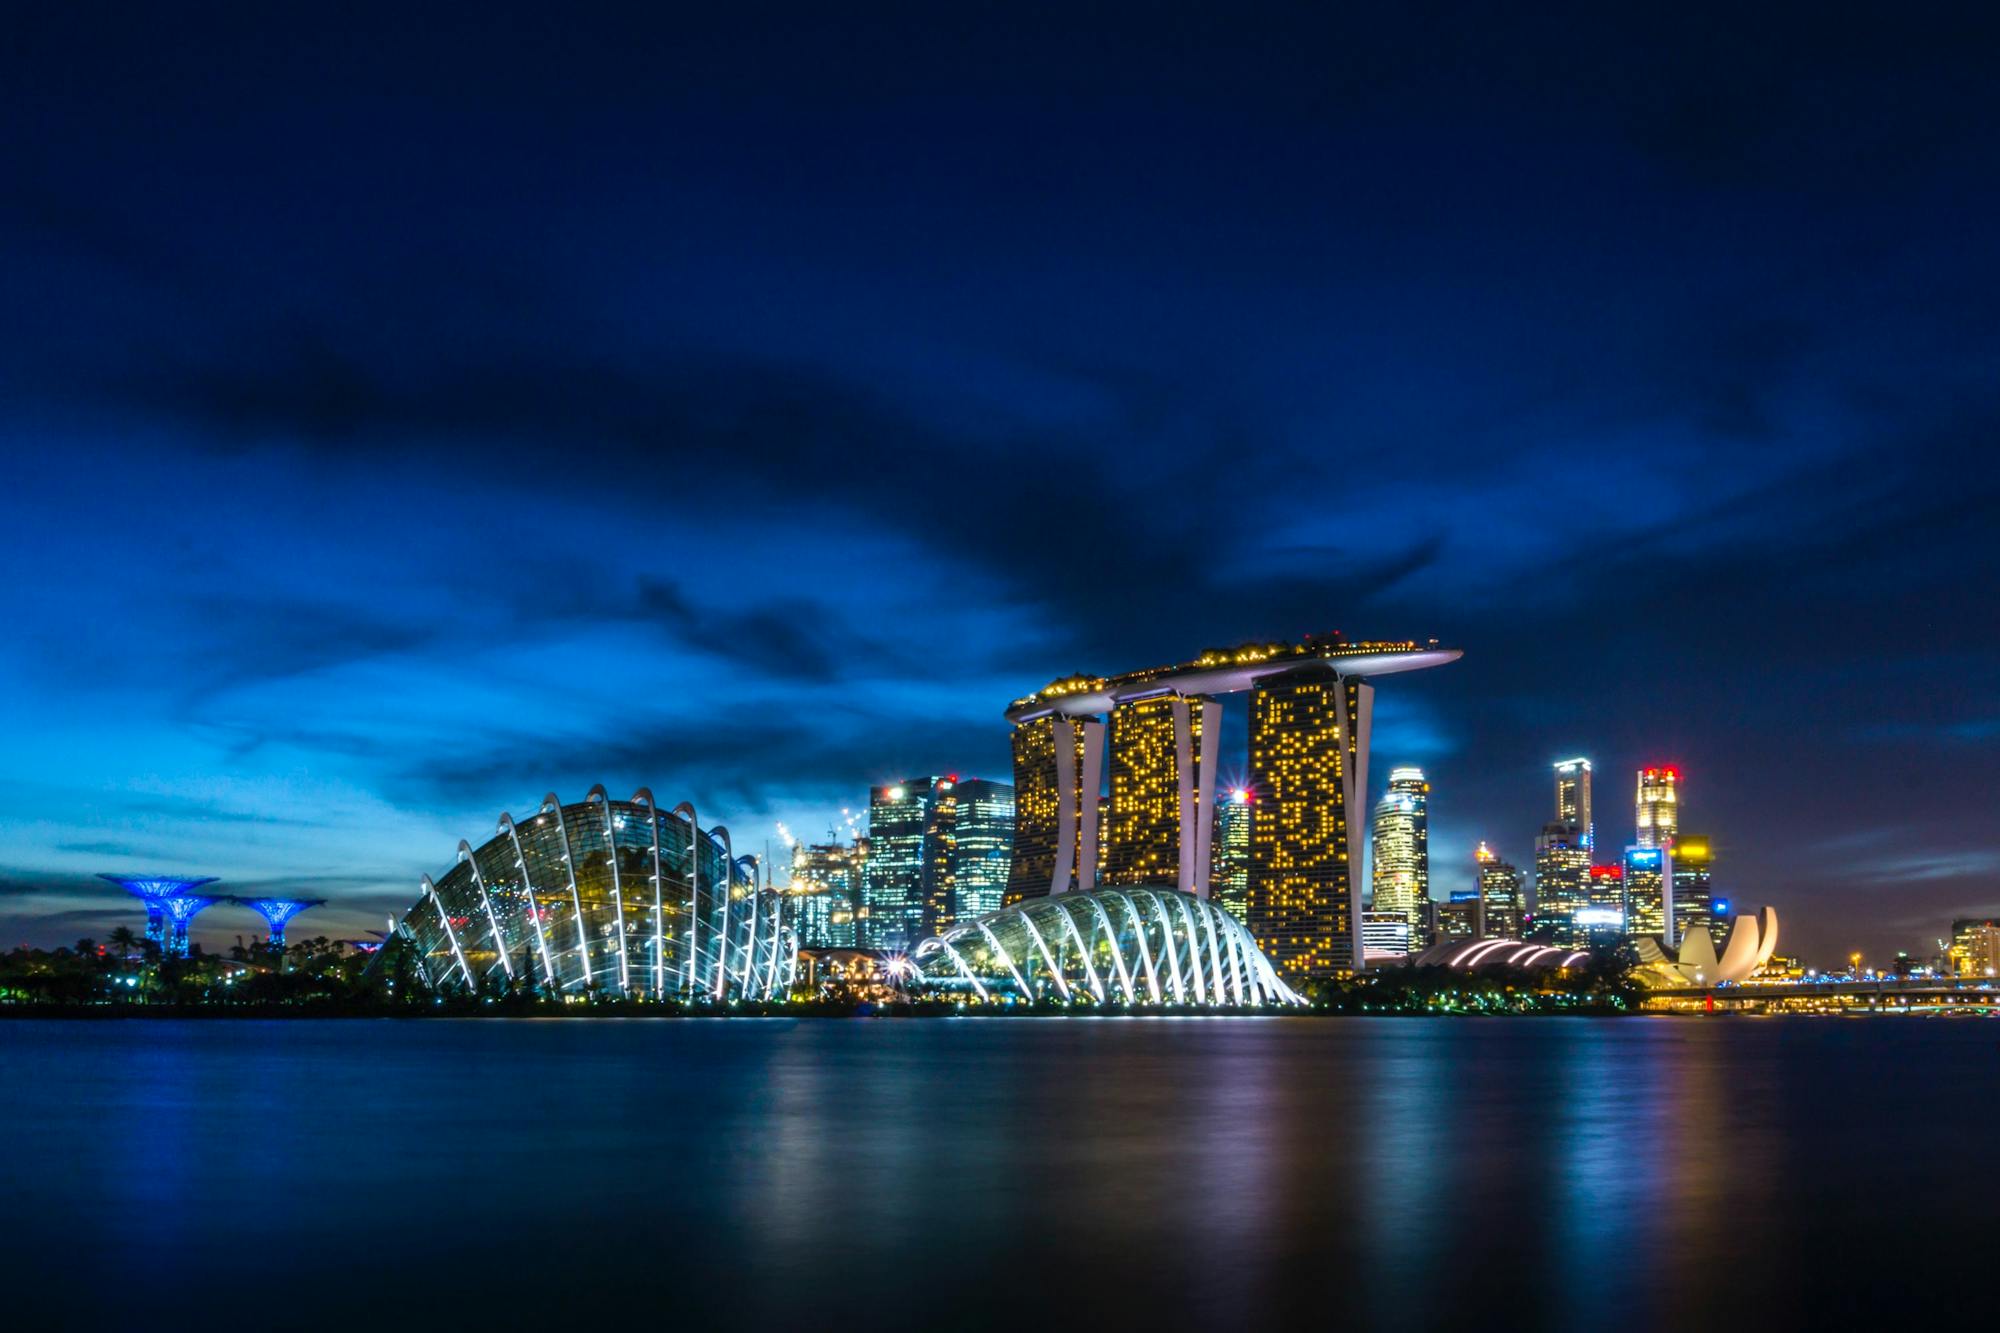 Singapur nocą: oświetlone wieżowce i odbijające się w wodzie światła.